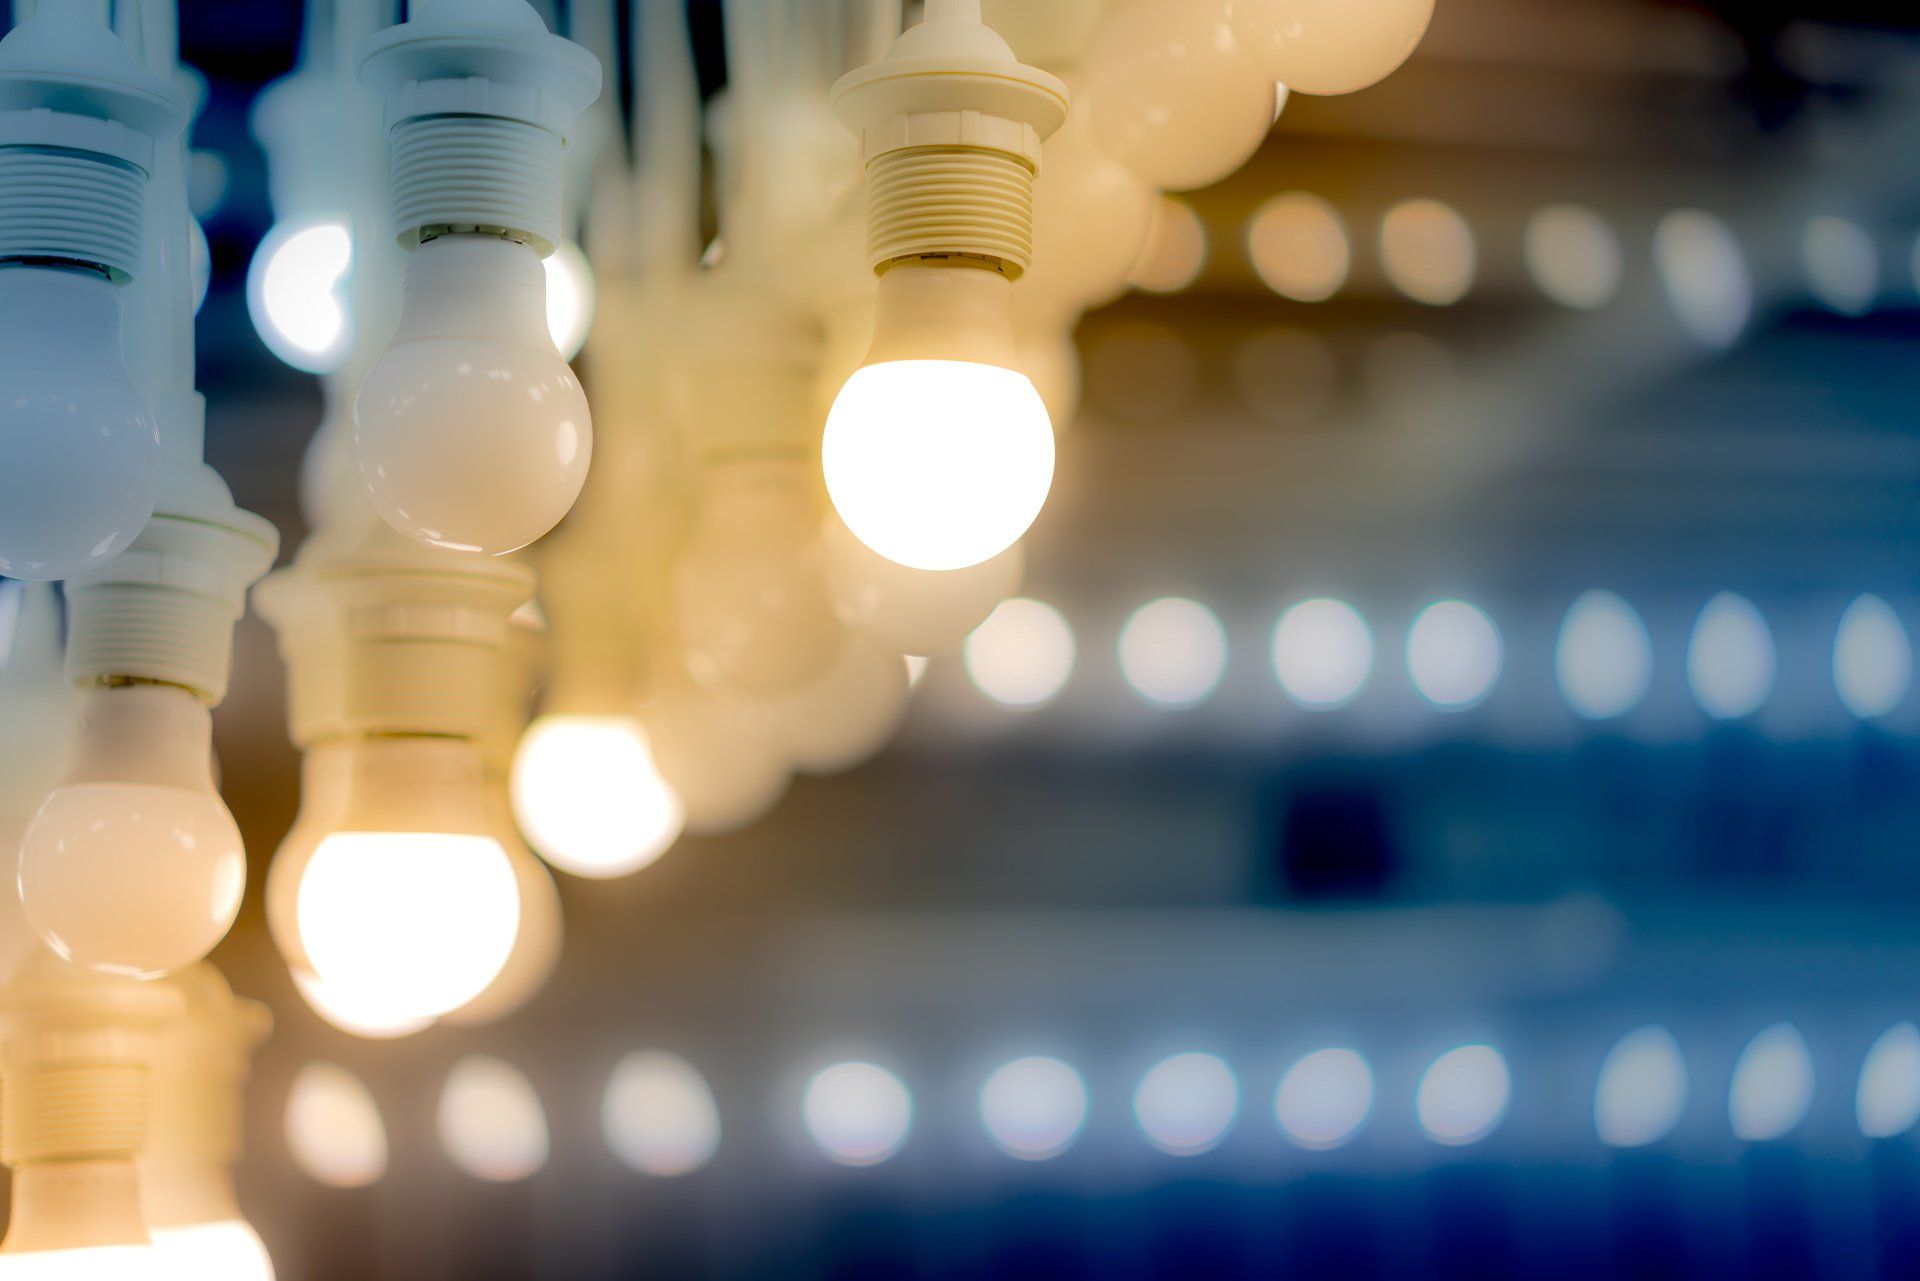 Cinco ventajas de la iluminación LED en la cocina - Iluminación